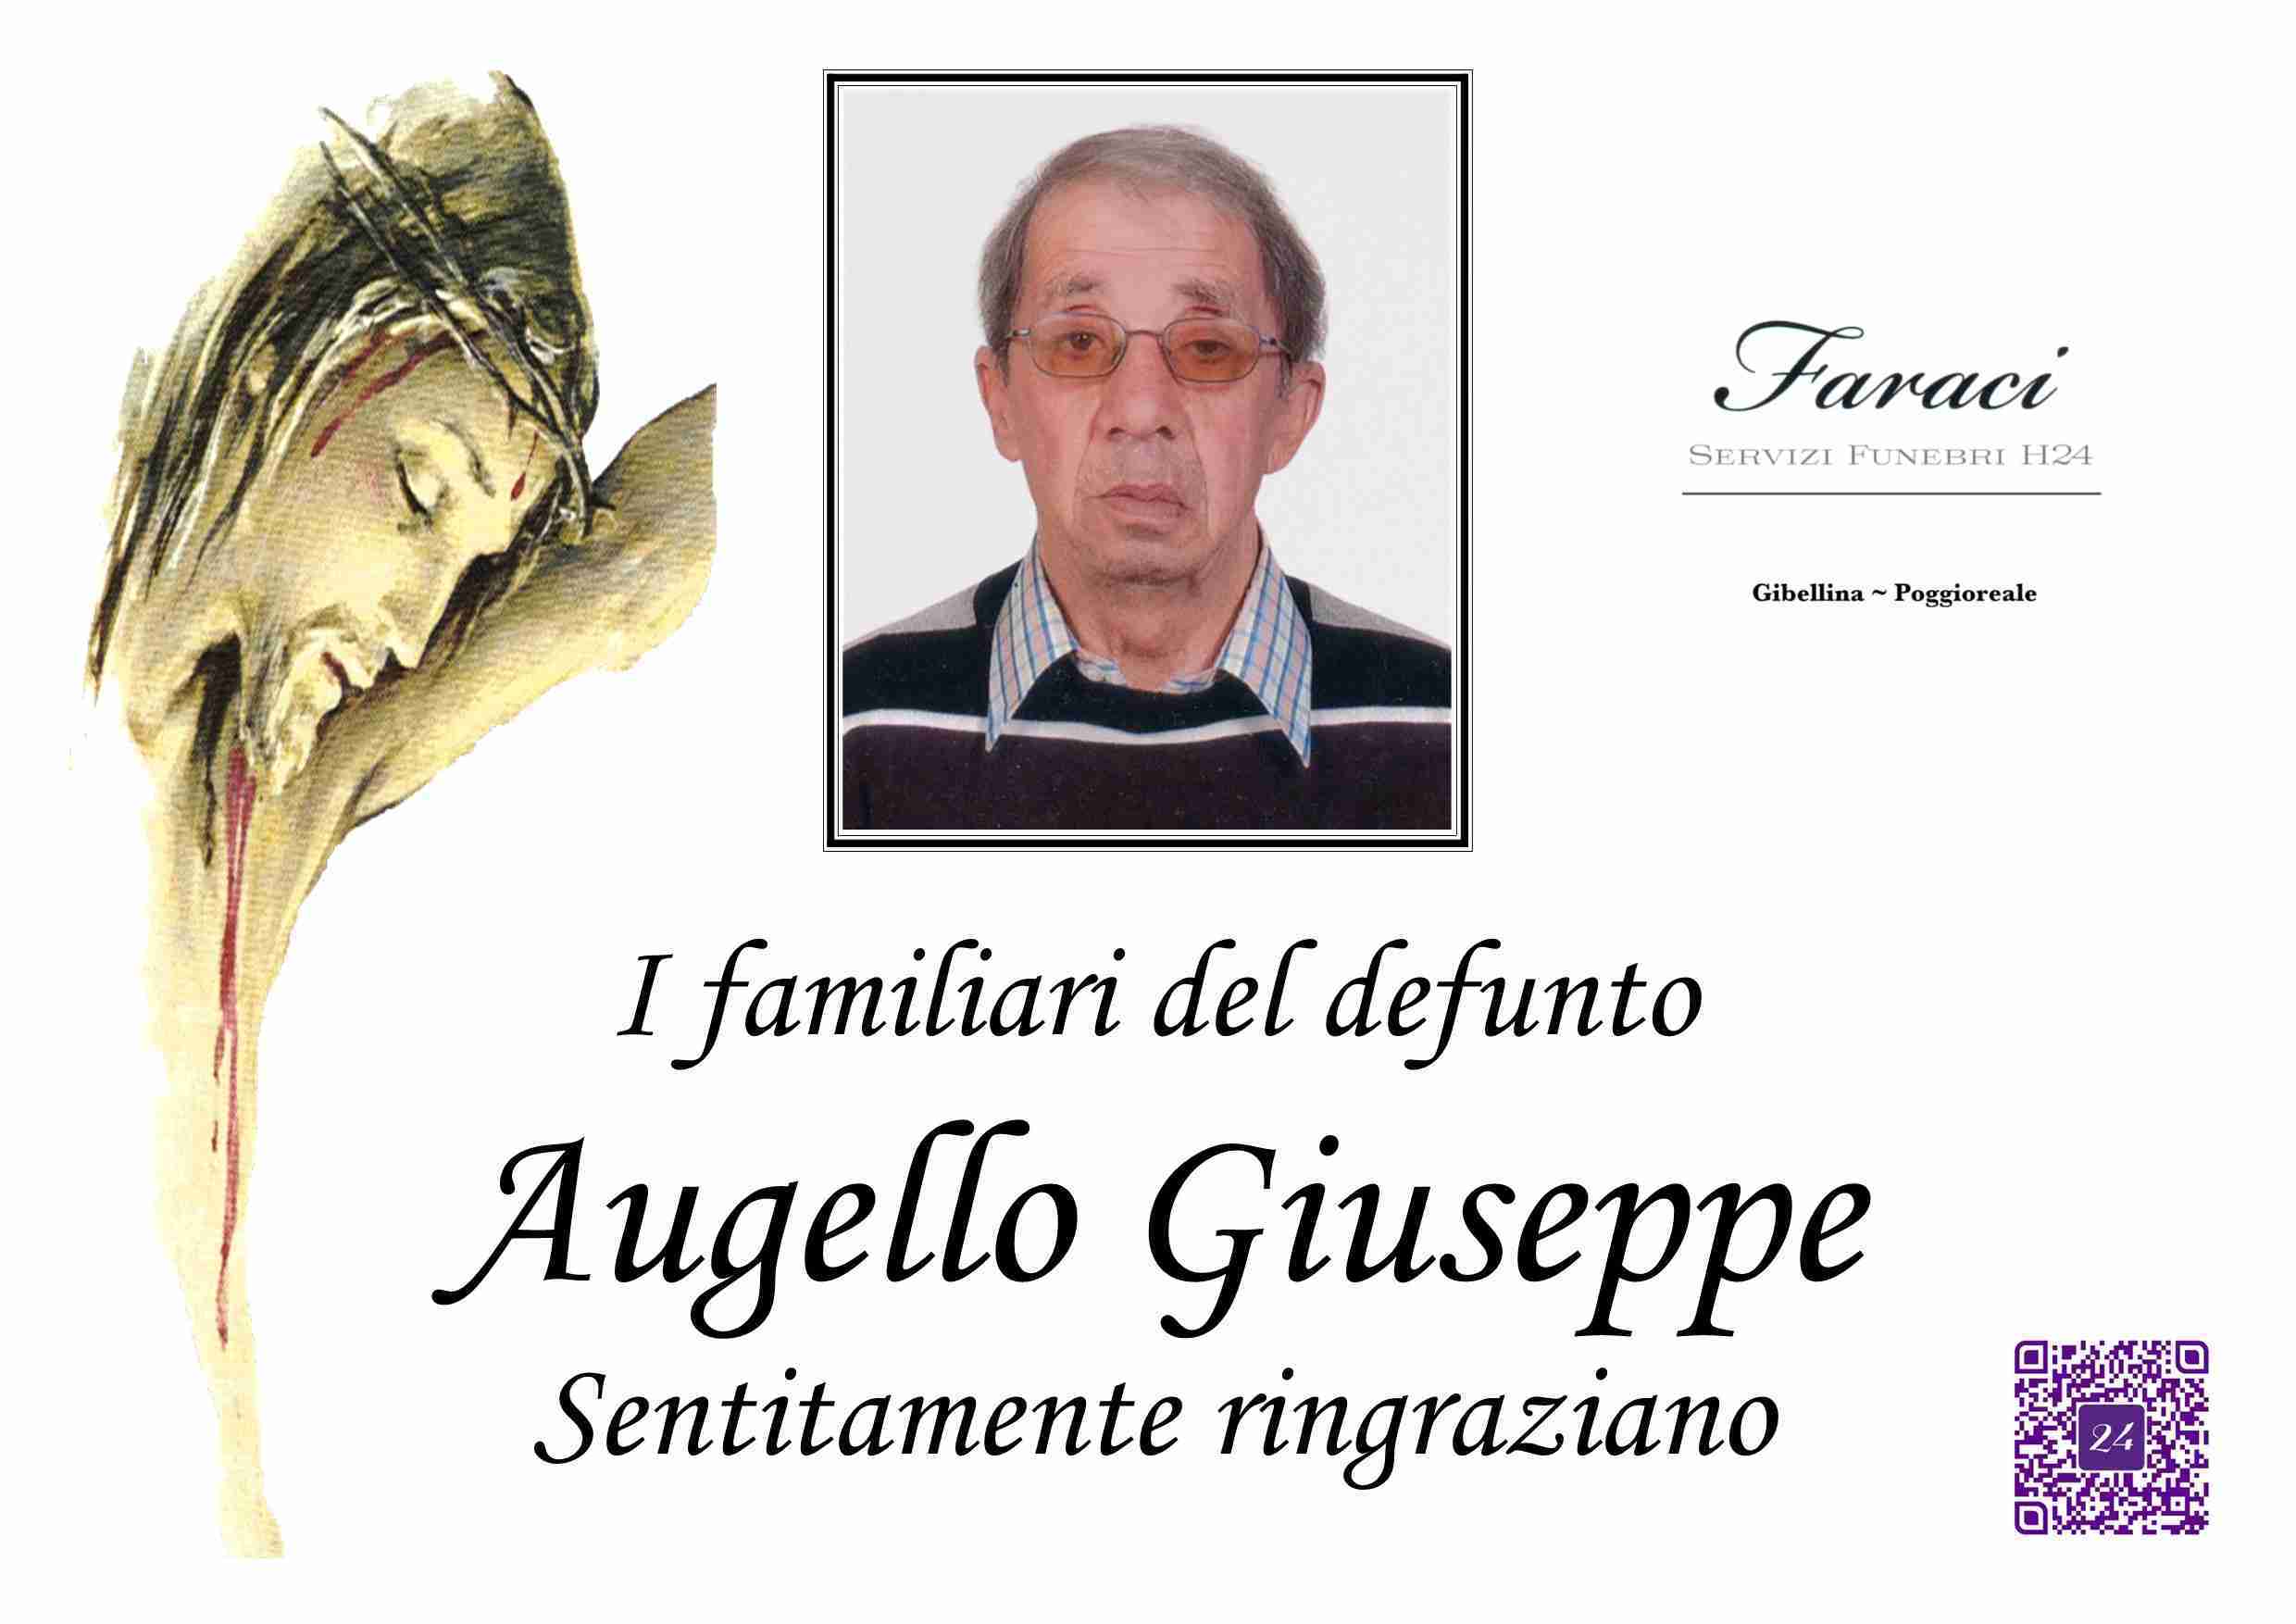 Giuseppe Augello